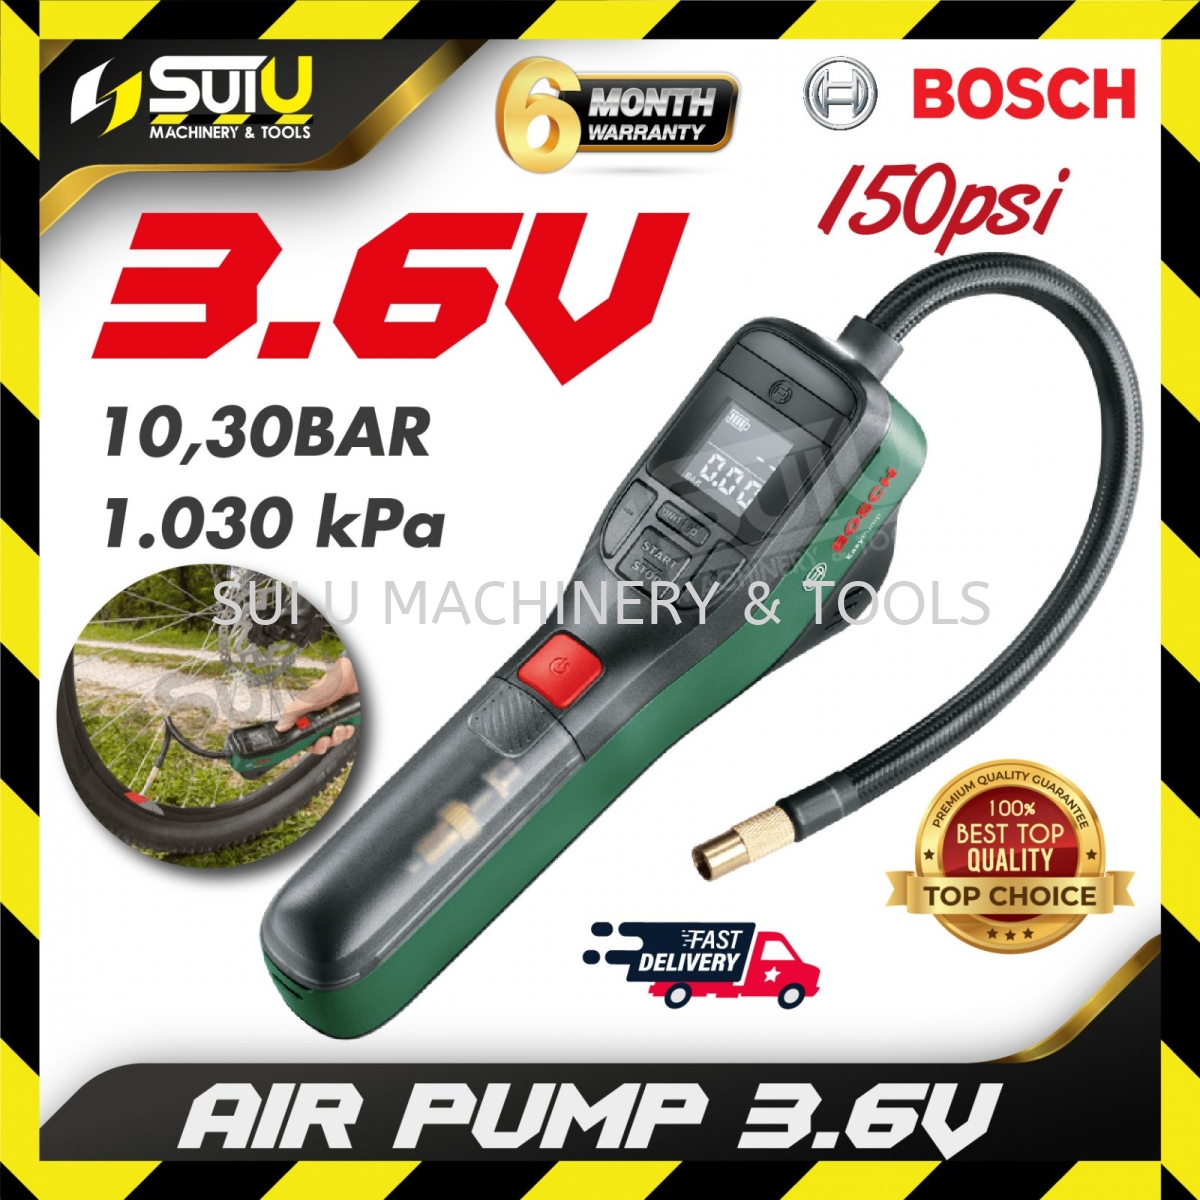 BOSCH Electric Air Pump Mini Compressor EasyPump (3.0 Ah Battery